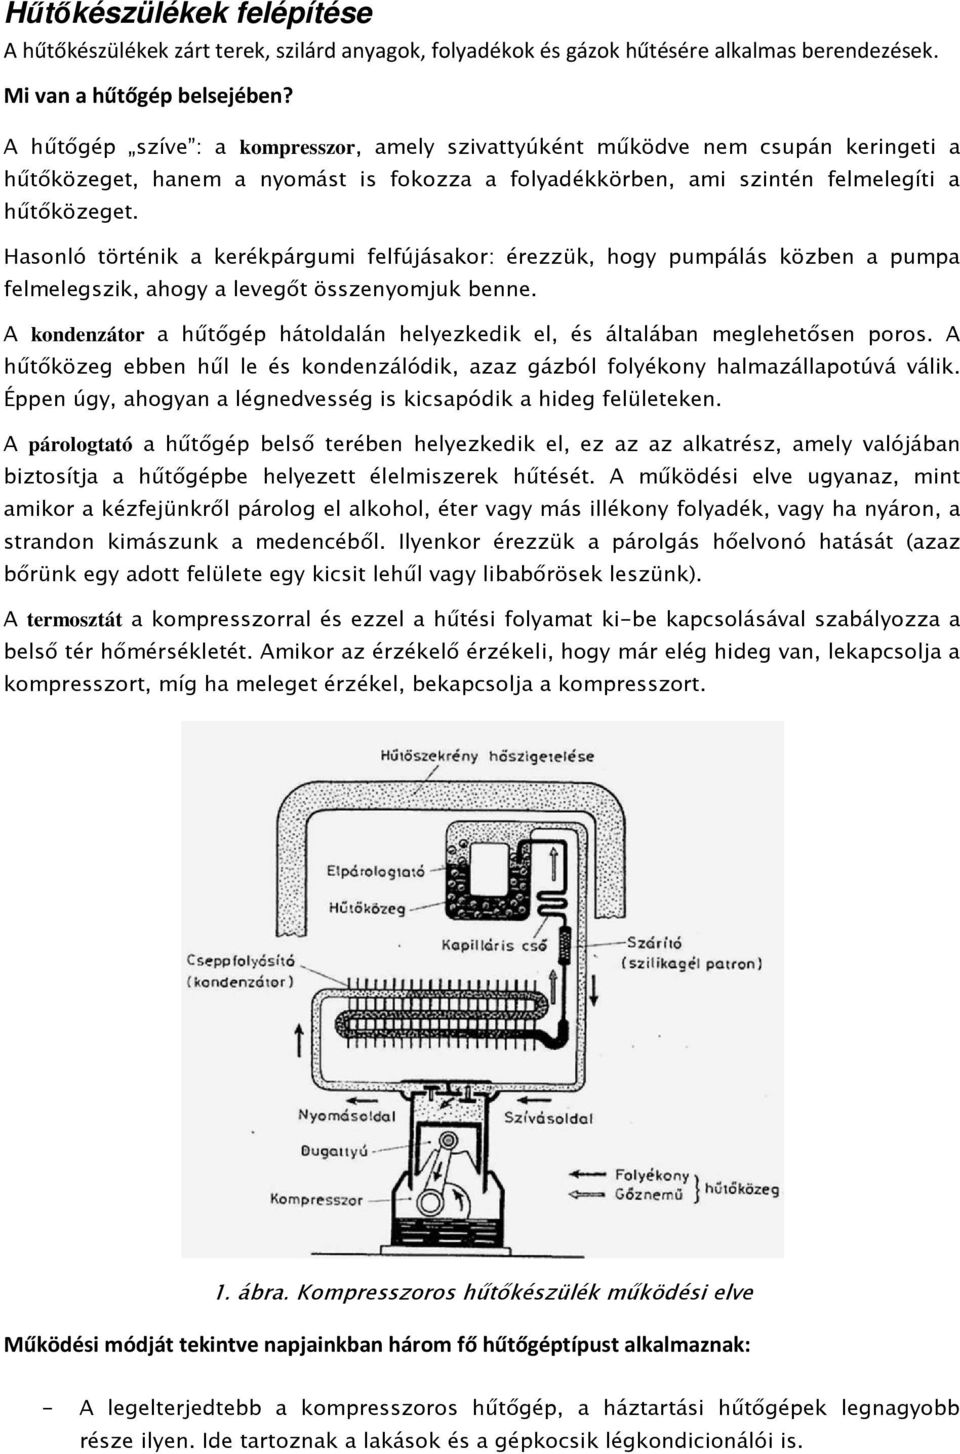 Hőtés, a hőtıgépek mőködési elve - PDF Ingyenes letöltés